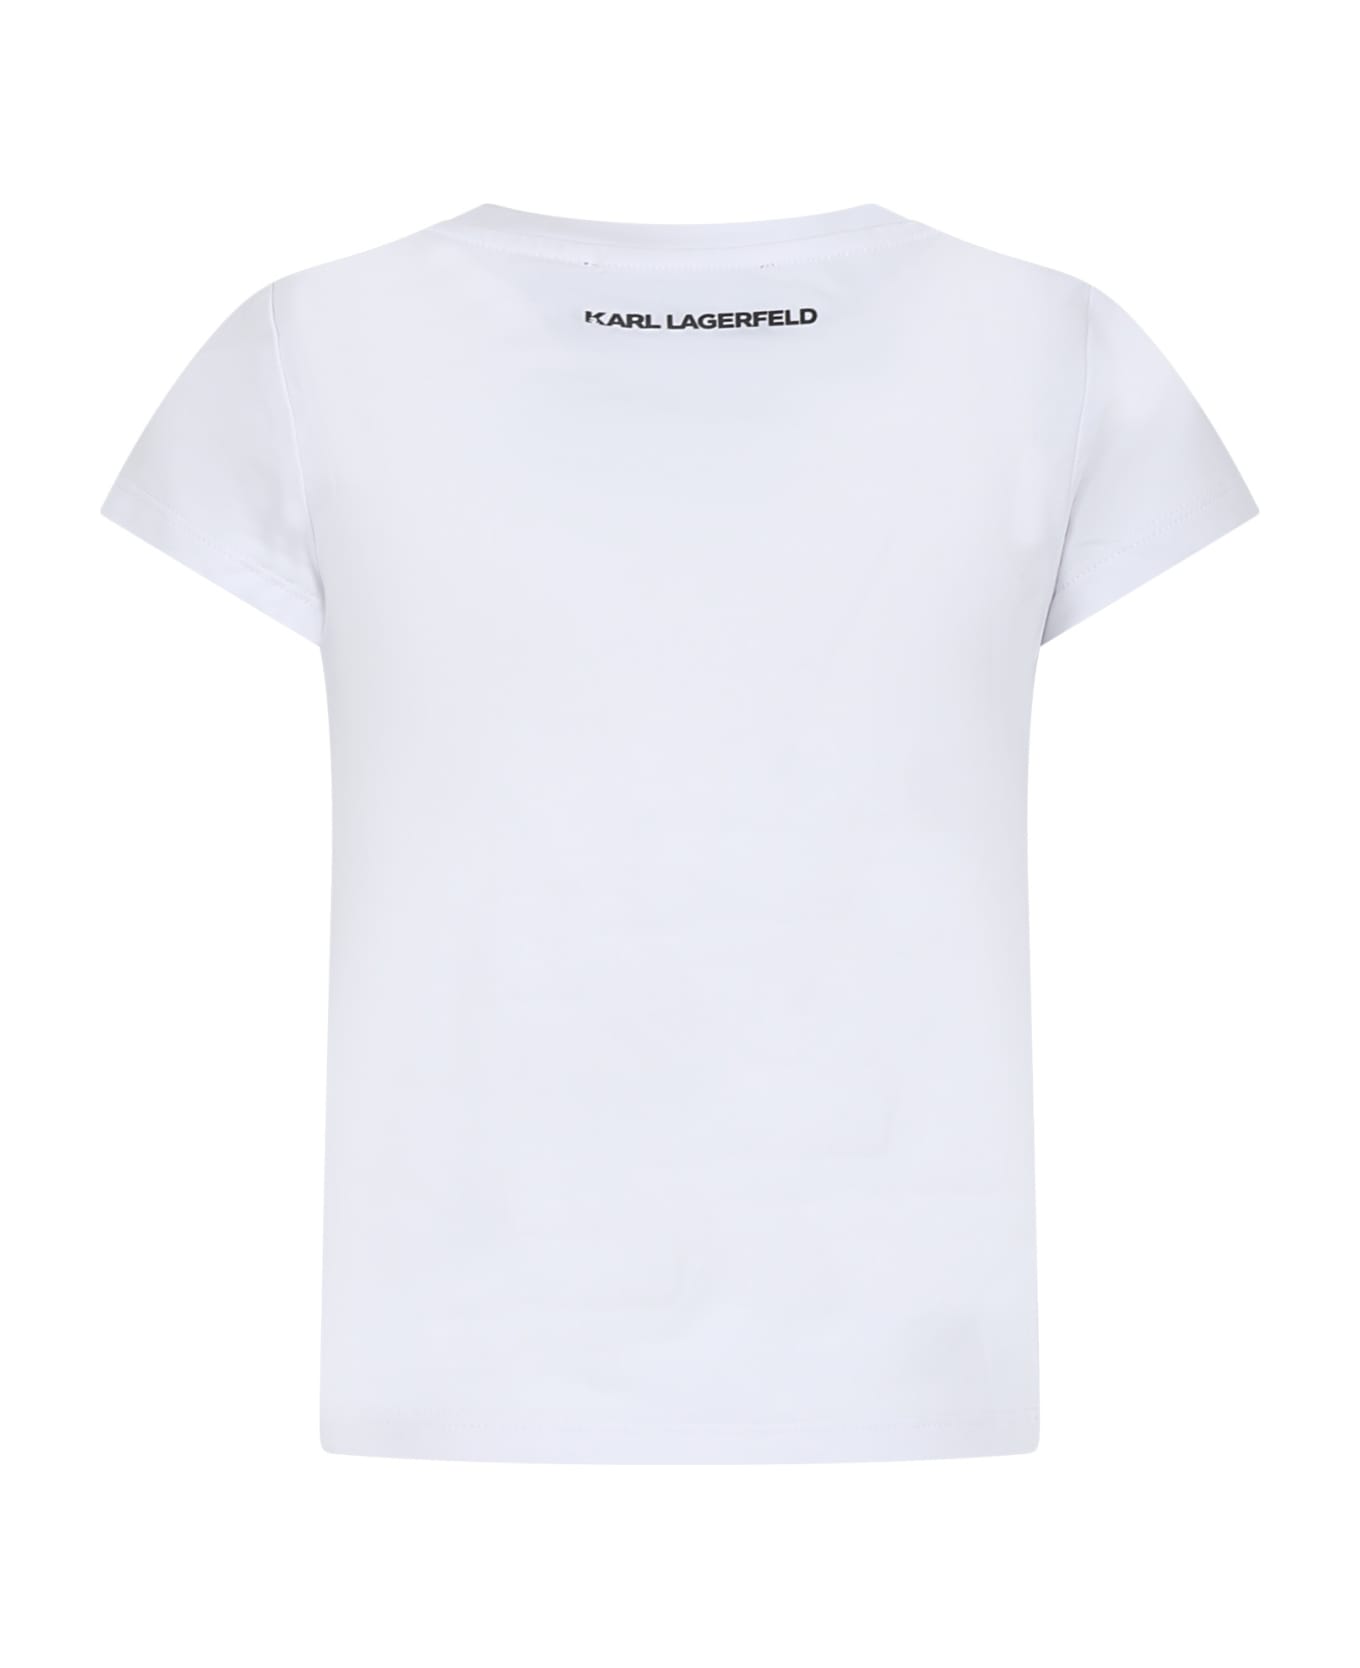 Karl Lagerfeld Kids White T-shirt For Girl With Logo - White